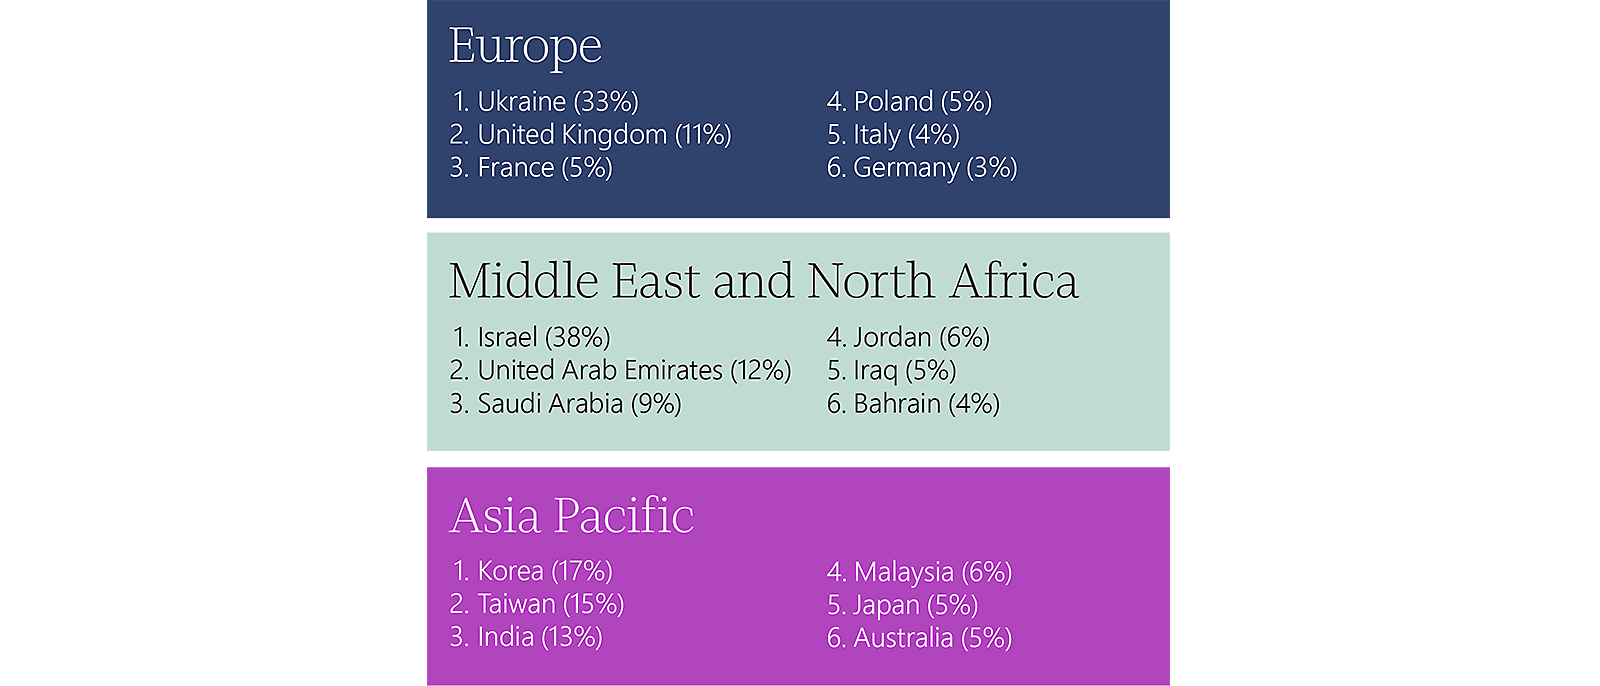 1-Date geografice: Europa - 4, Polonia - 4, Orientul Mijlociu și Africa de Nord - 2,2, Asia-Pacific - 2, Wenc - 61